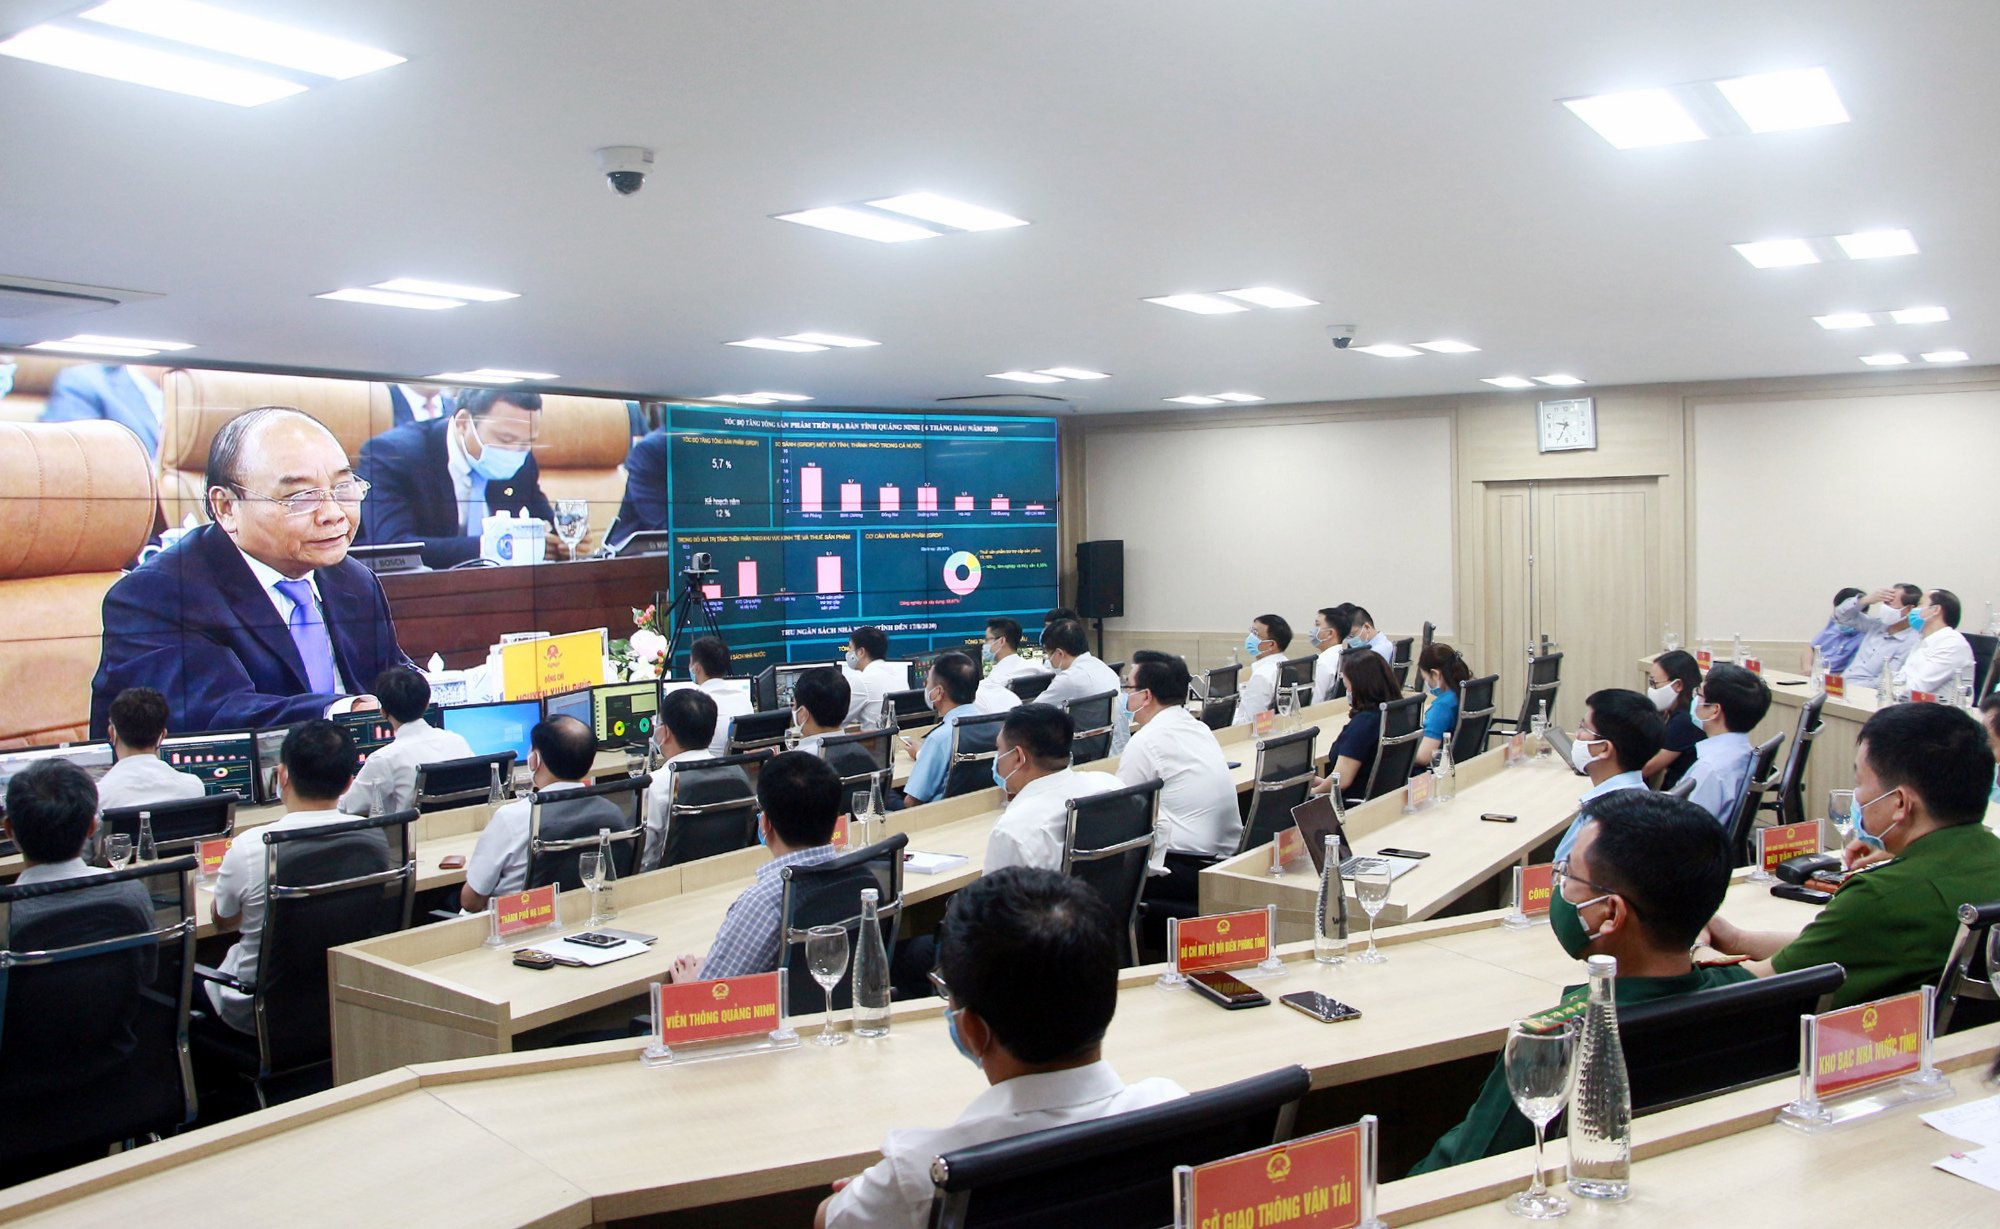 Trung tâm Điều hành thành phố thông minh tỉnh Quảng Ninh chính thức kết nối thành công với Hệ thống Thông tin báo cáo quốc gia, Trung tâm Thông tin, chỉ đạo, điều hành của Chính phủ, Thủ tướng Chính phủ từ tháng 8/2020.